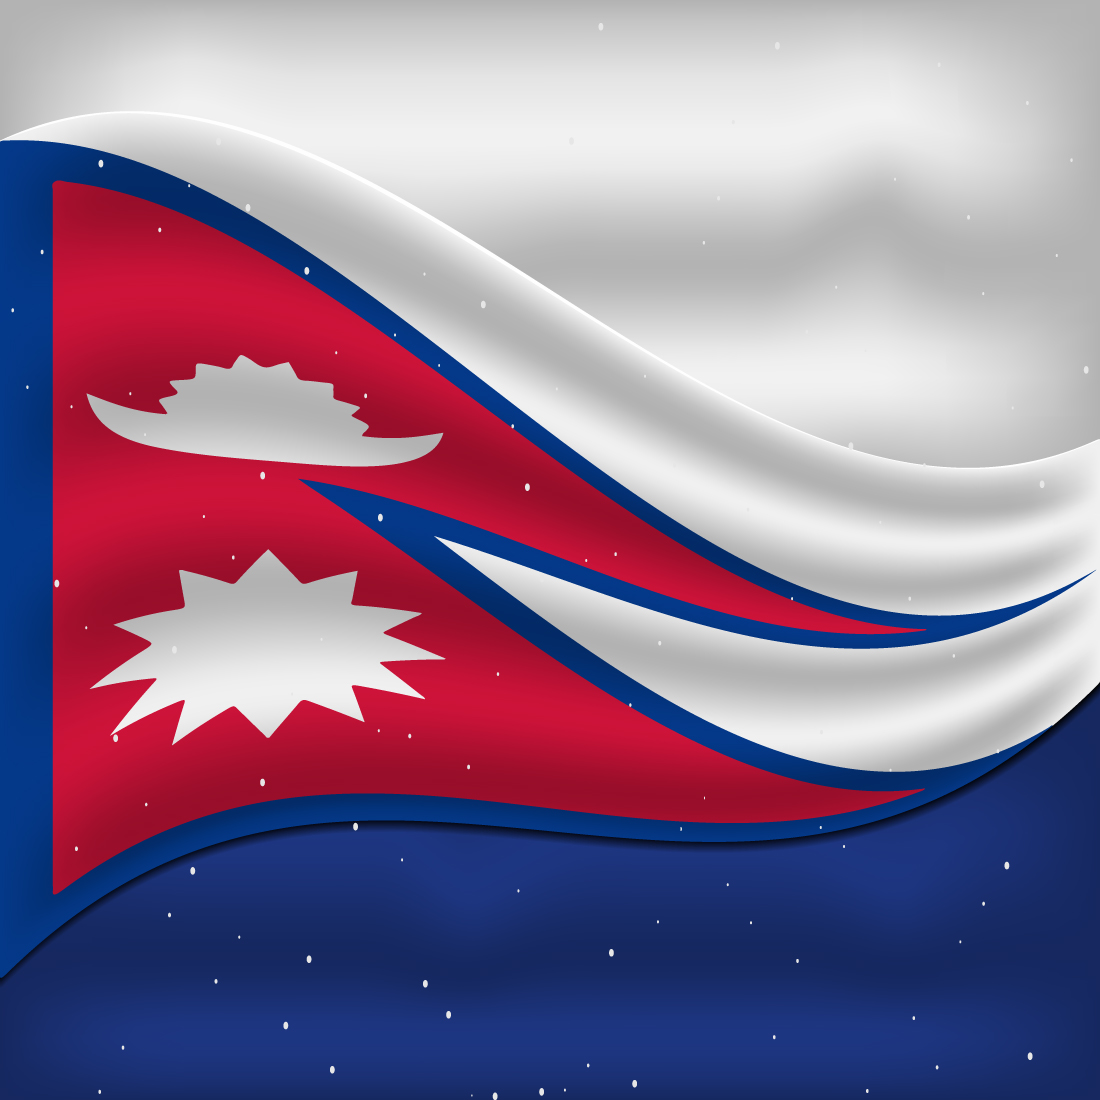 Amazing image of Nepal flag.